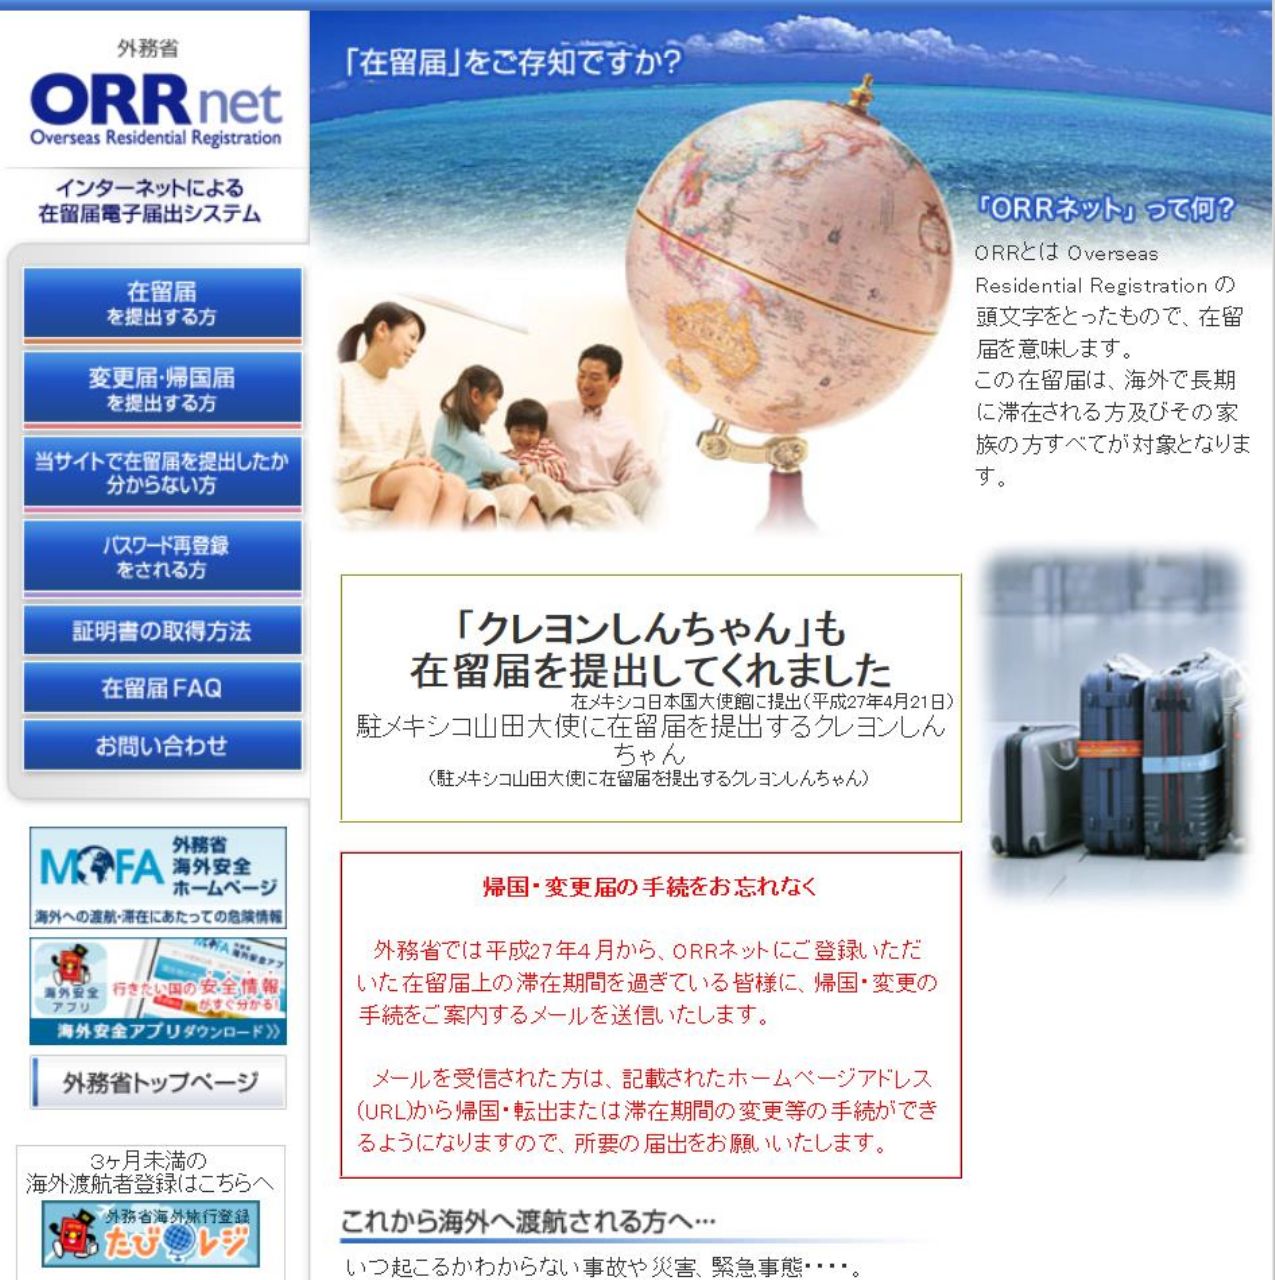 海外就職 留学 ロングステイ 海外に住むなら 在留届 を出しておきましょう Office Seishiron 海外から見た日本の 視点でビジネスを考える